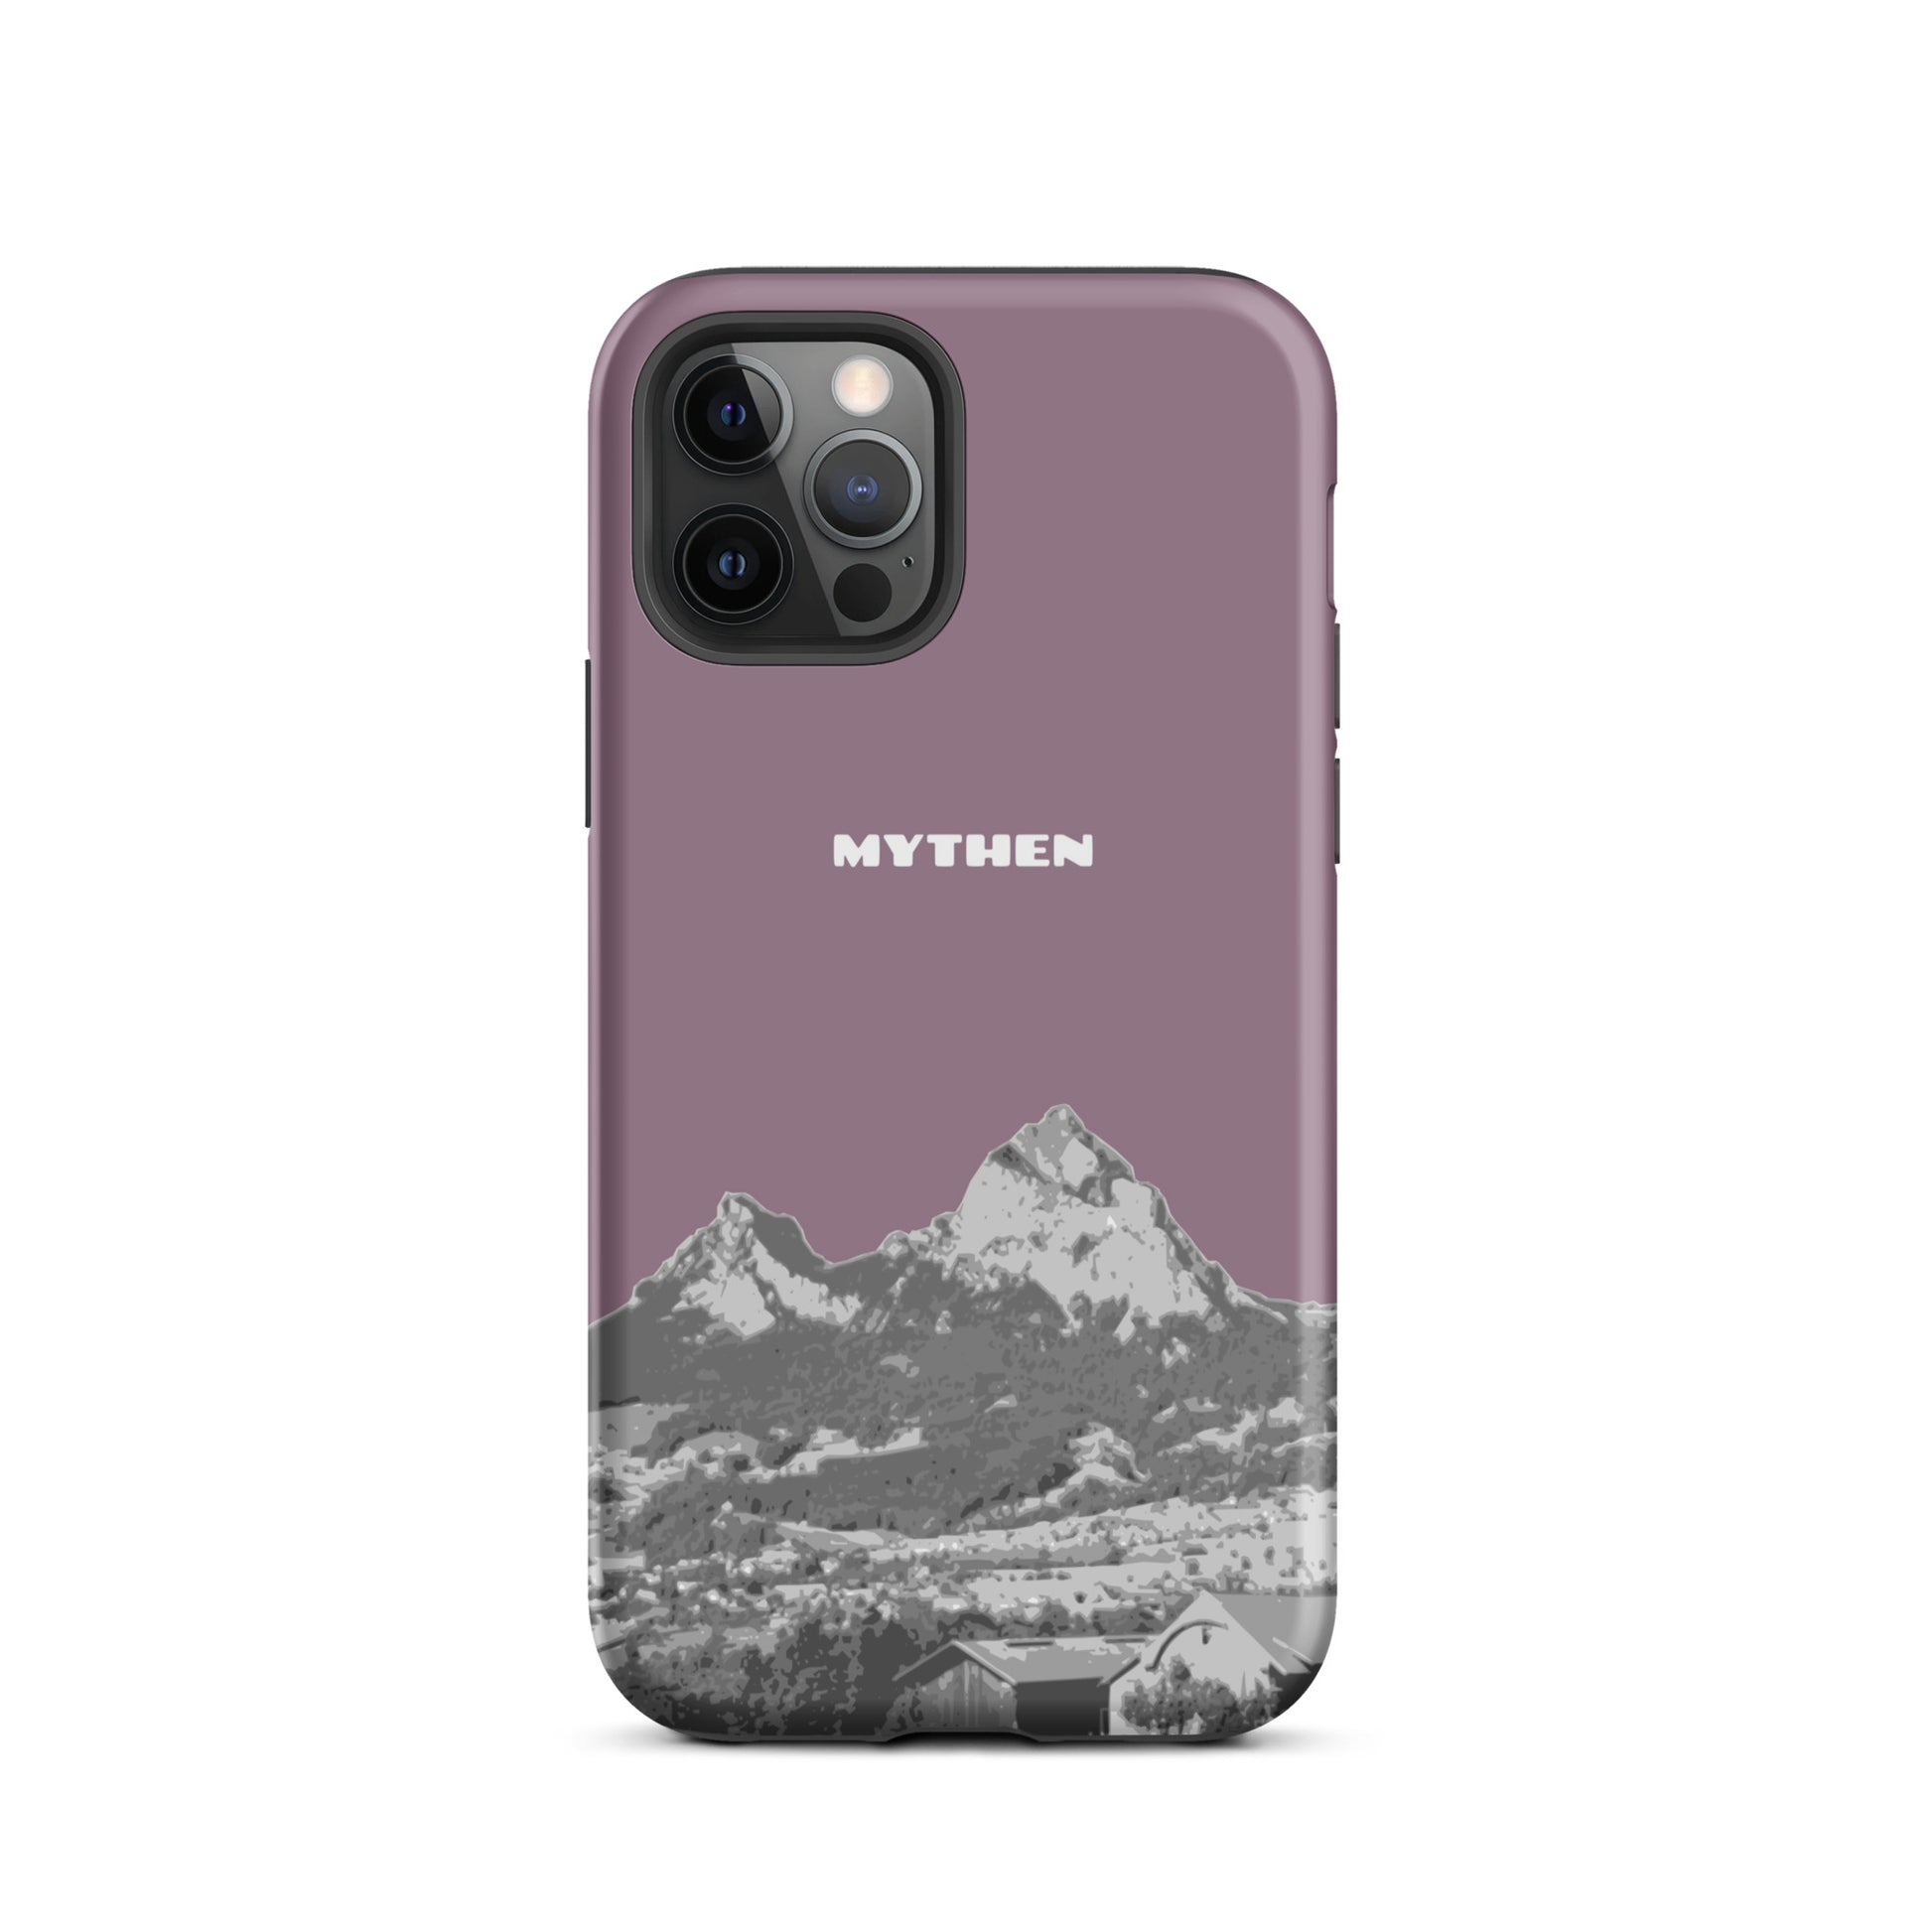 Hülle für das iPhone 12 Pro von Apple in der Farbe Pastellviolett, die den Grossen Mythen und den Kleinen Mythen bei Schwyz zeigt. 